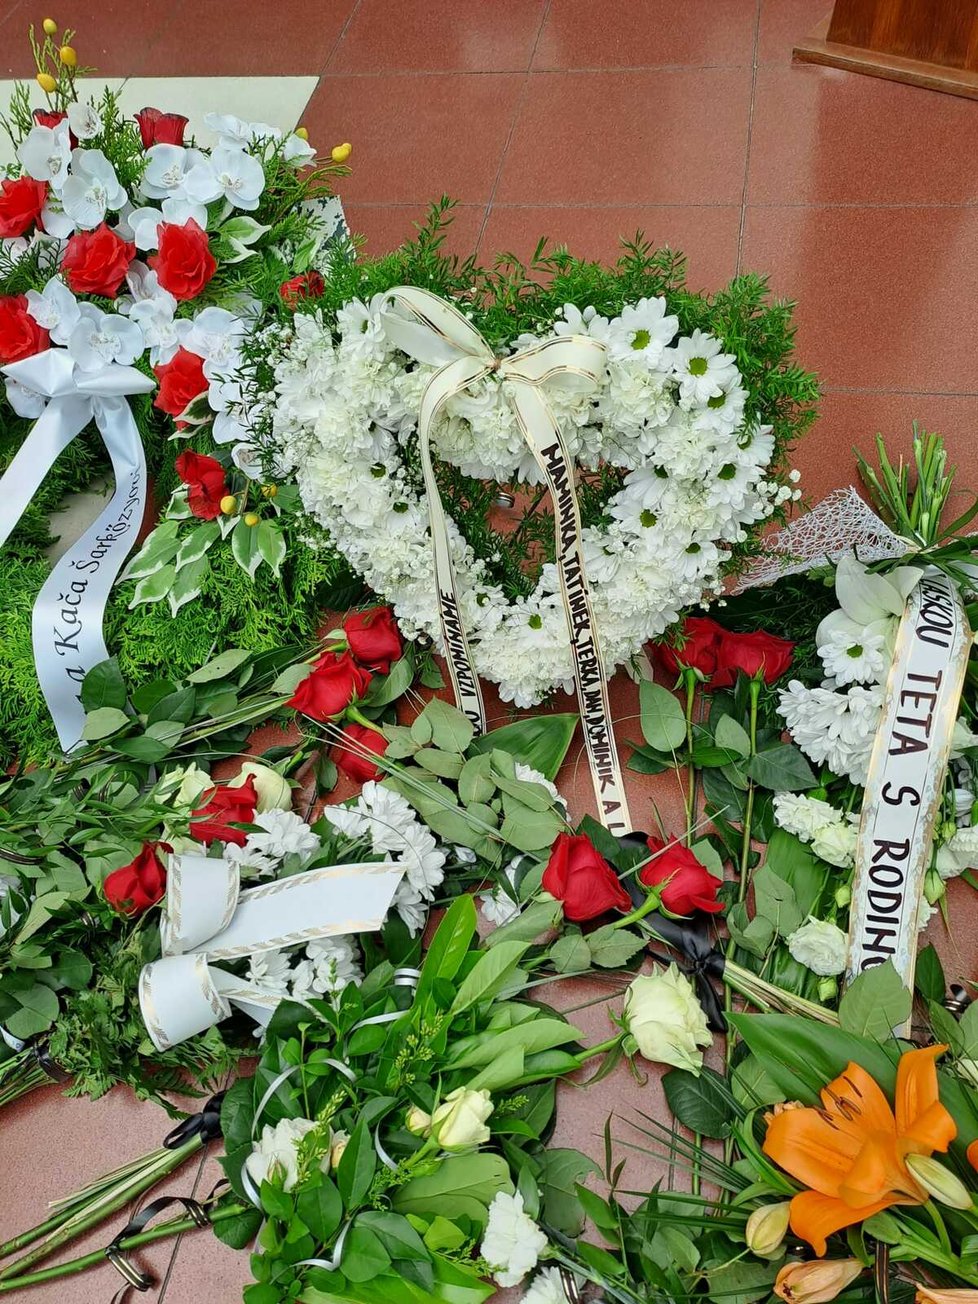 Se zavražděným Nicolasem (†23) se přišly na Ústřední hřbitov v Brně rozloučit desítky lidí. Ostatky mladíka byly po obřadě uloženy do rodinného hrobu.